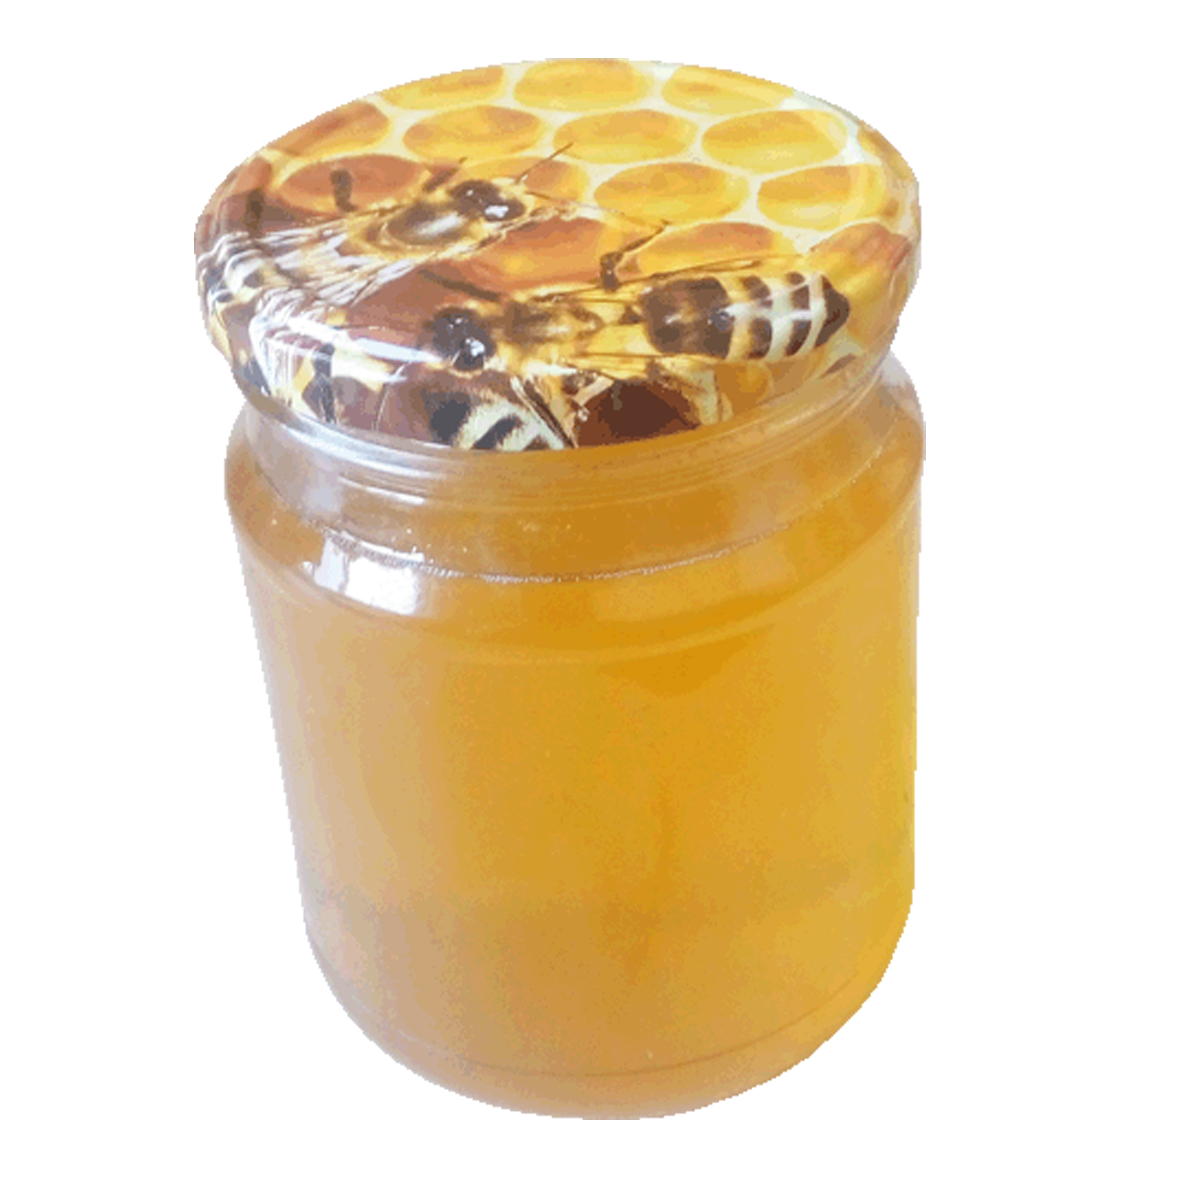 Купить 3 литровую банку меда. Мёд гречишный натуральный 700 гр. Мёд гречишный 500мл. Донниковый мед башкирские пасеки. Липовый мед Башкирский пасека.